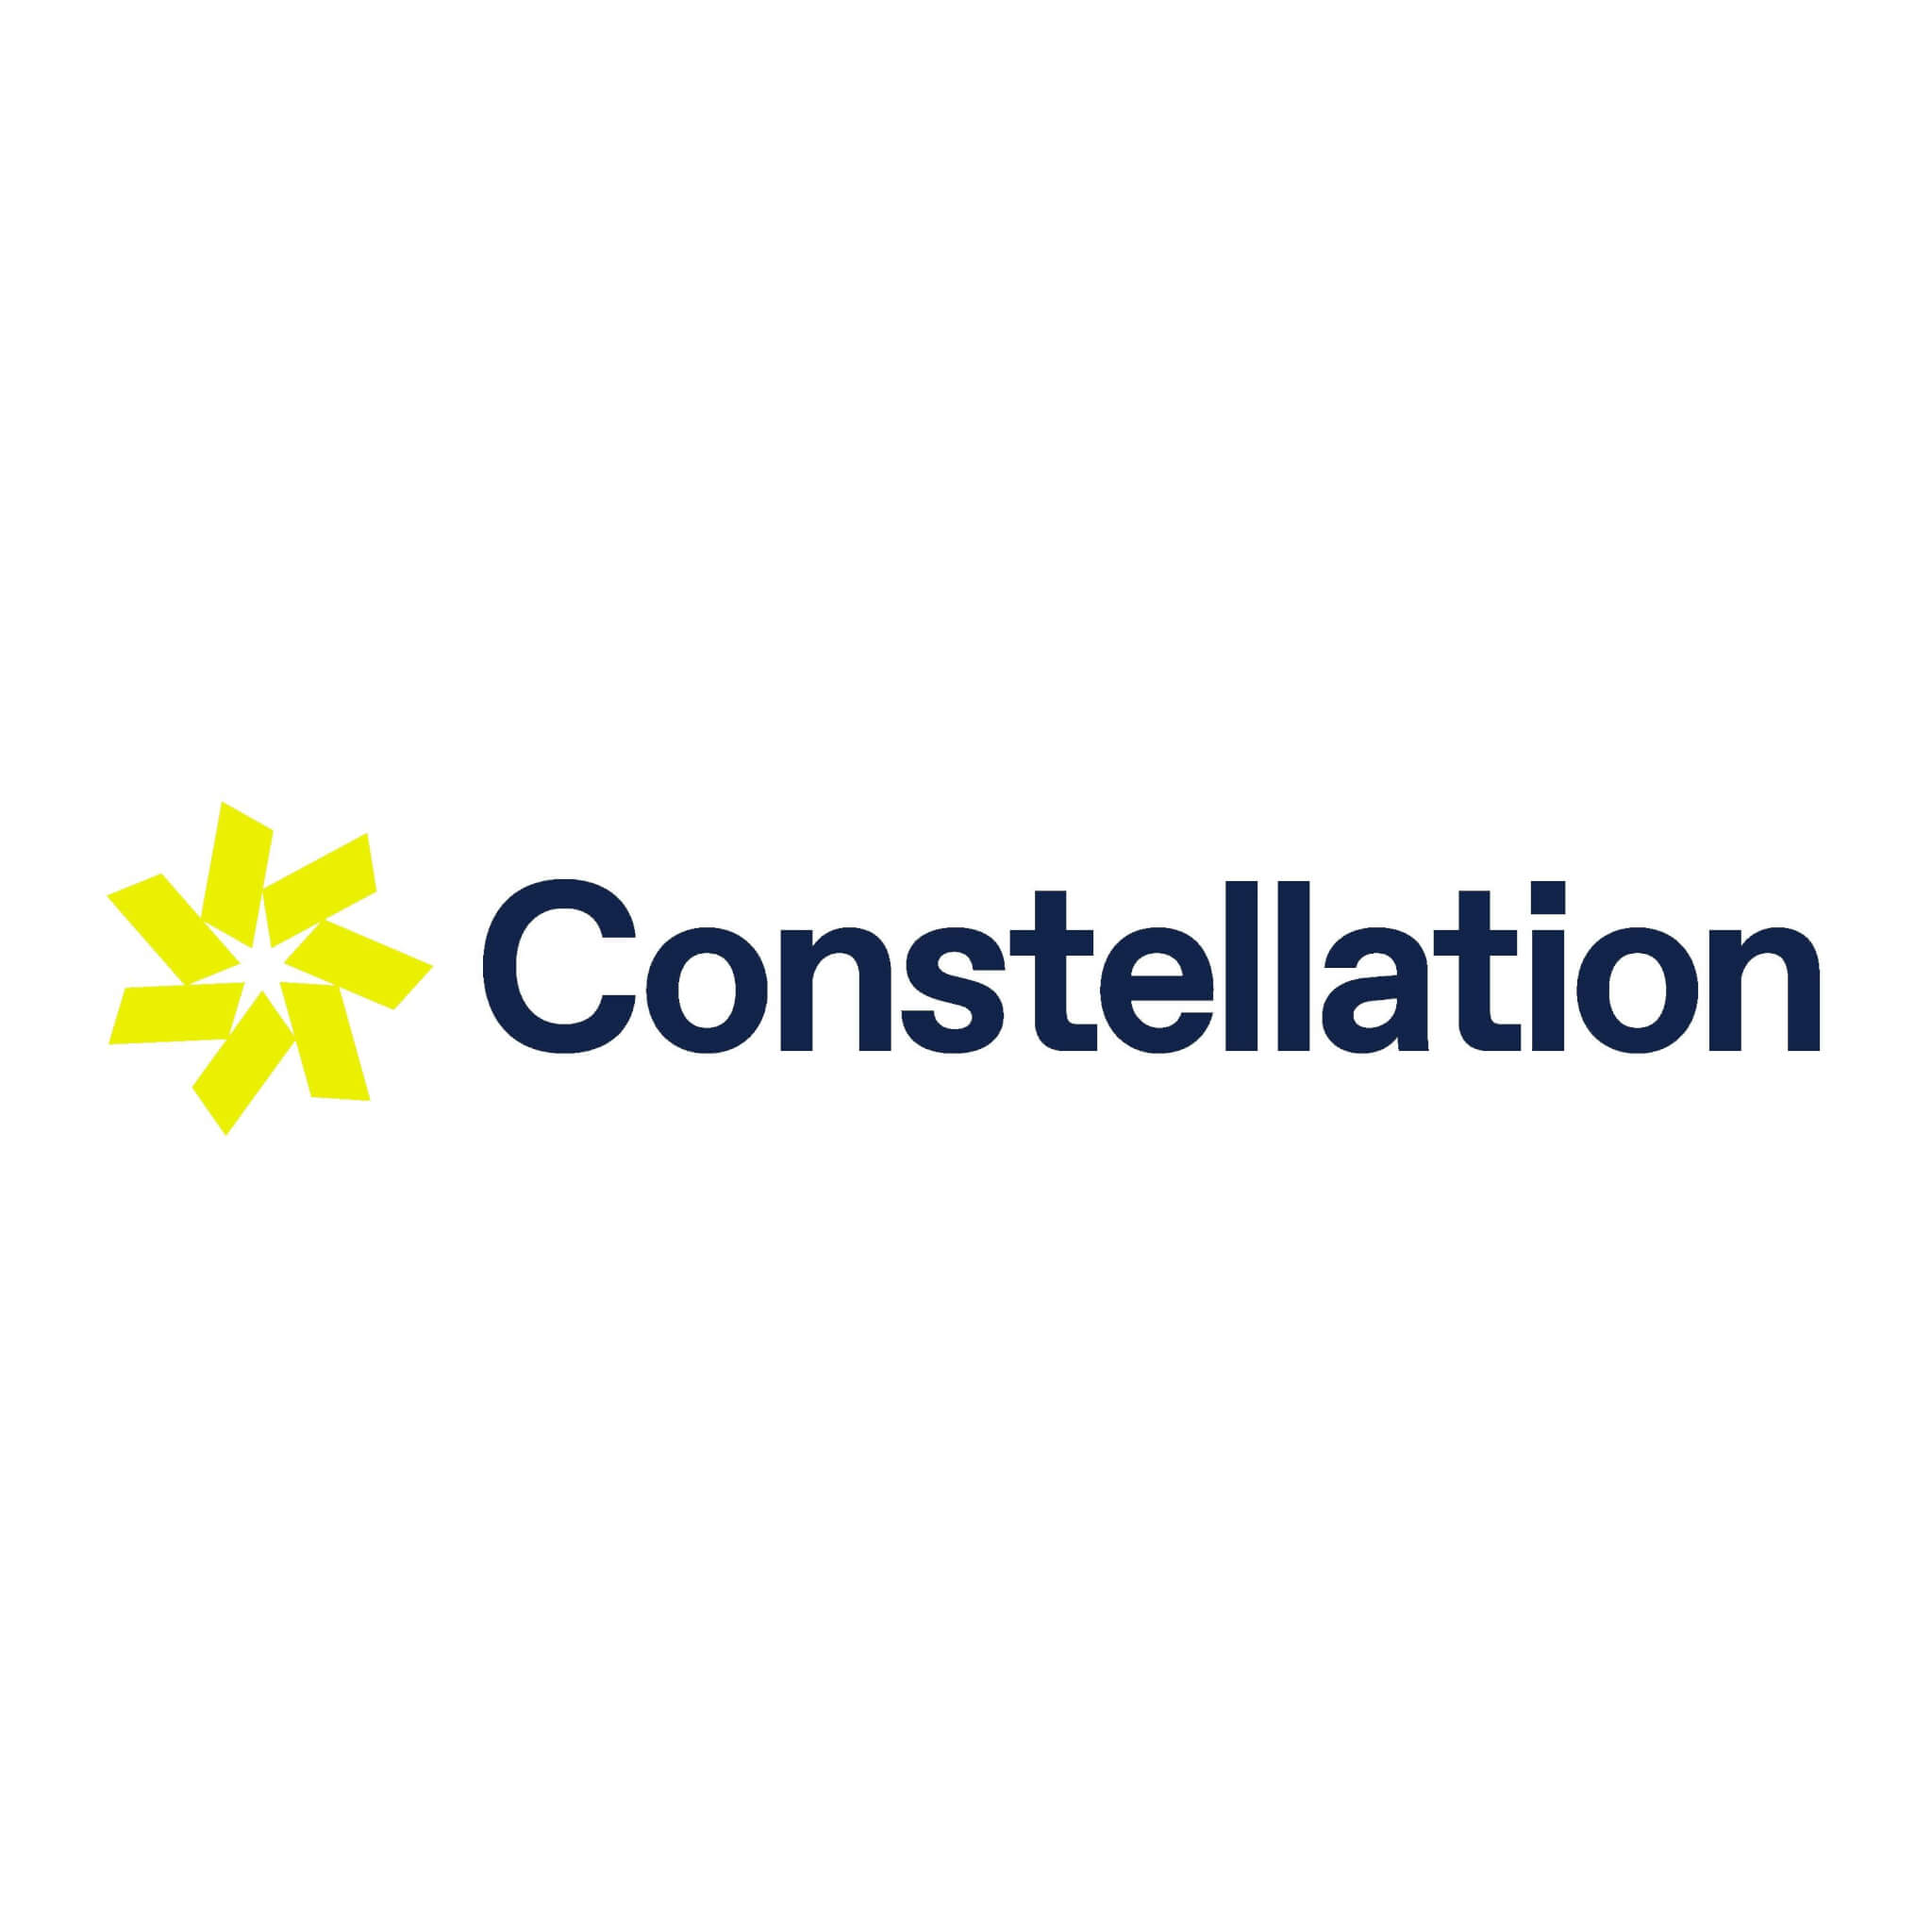 Constellation-Health-Logo